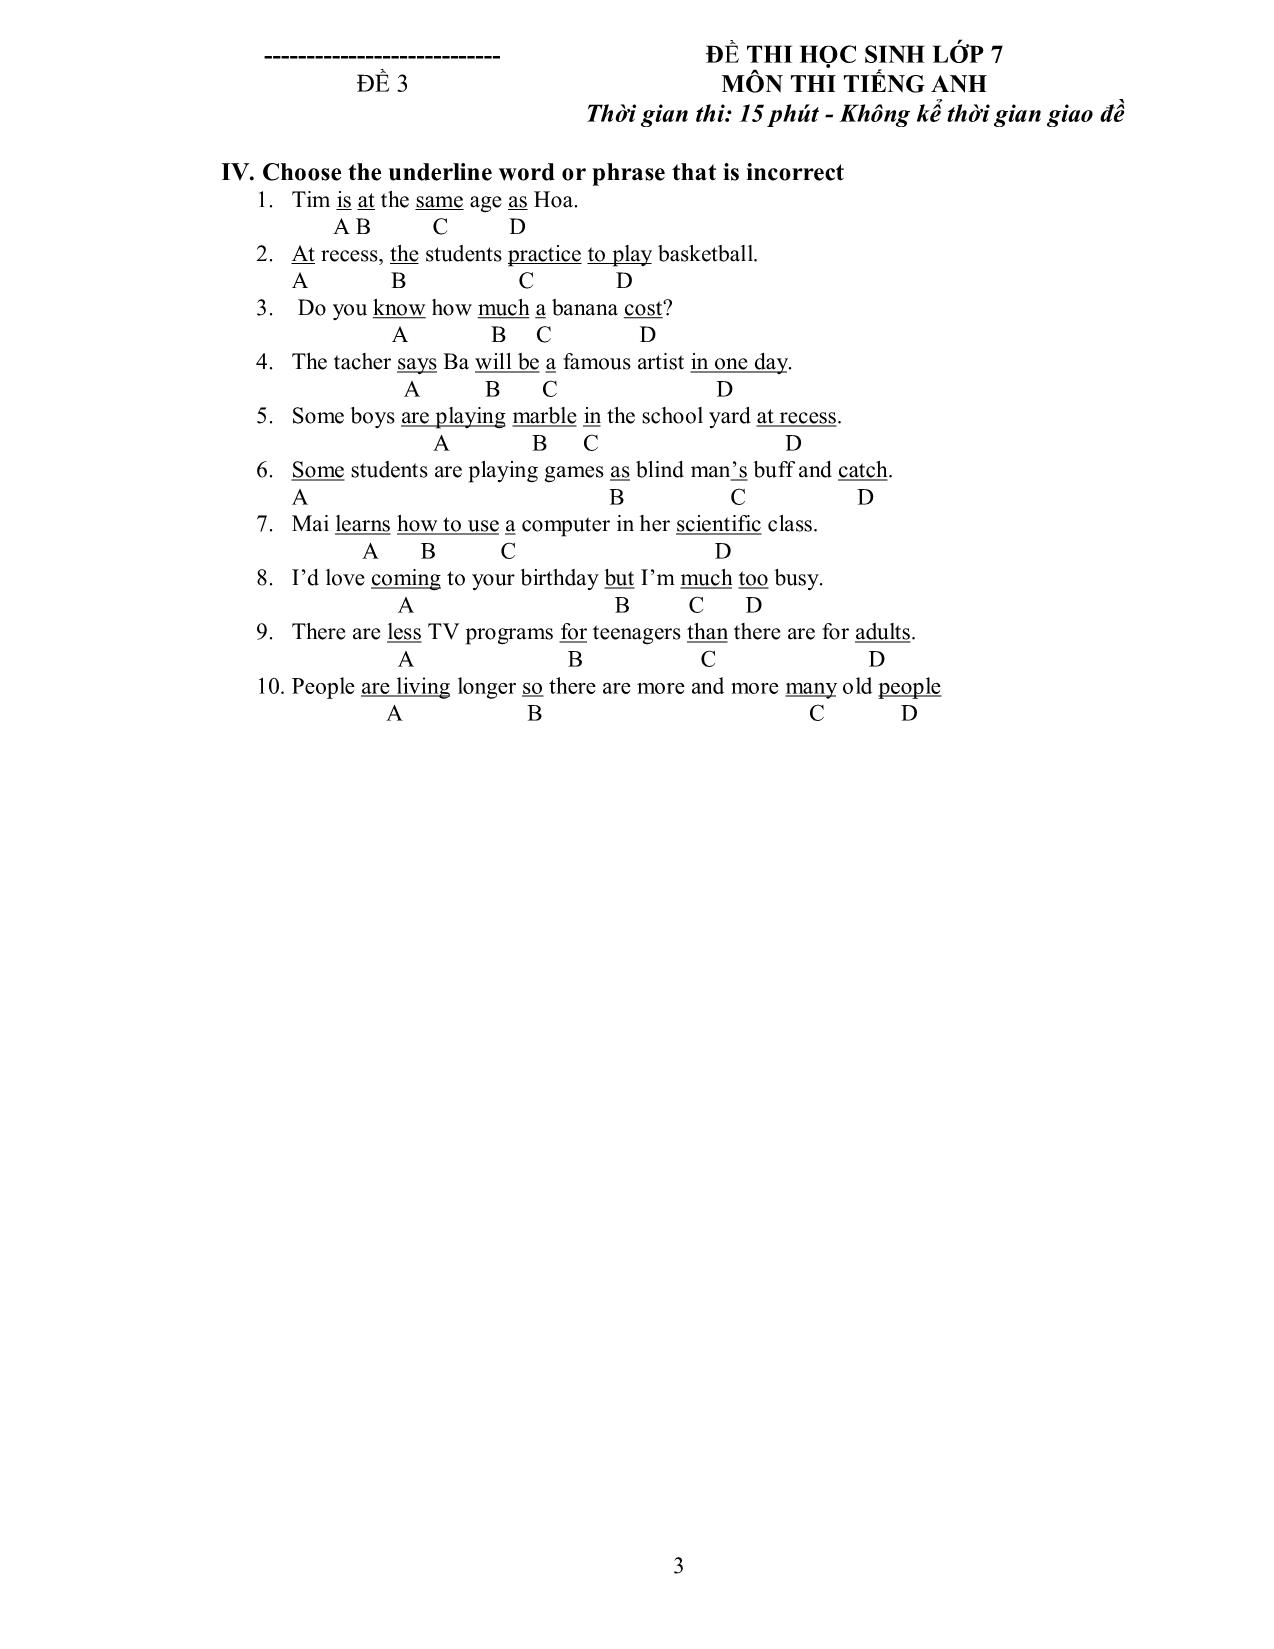 Bài kiểm tra 15 phút số 3 môn tiếng Anh - Lớp 7 trang 7